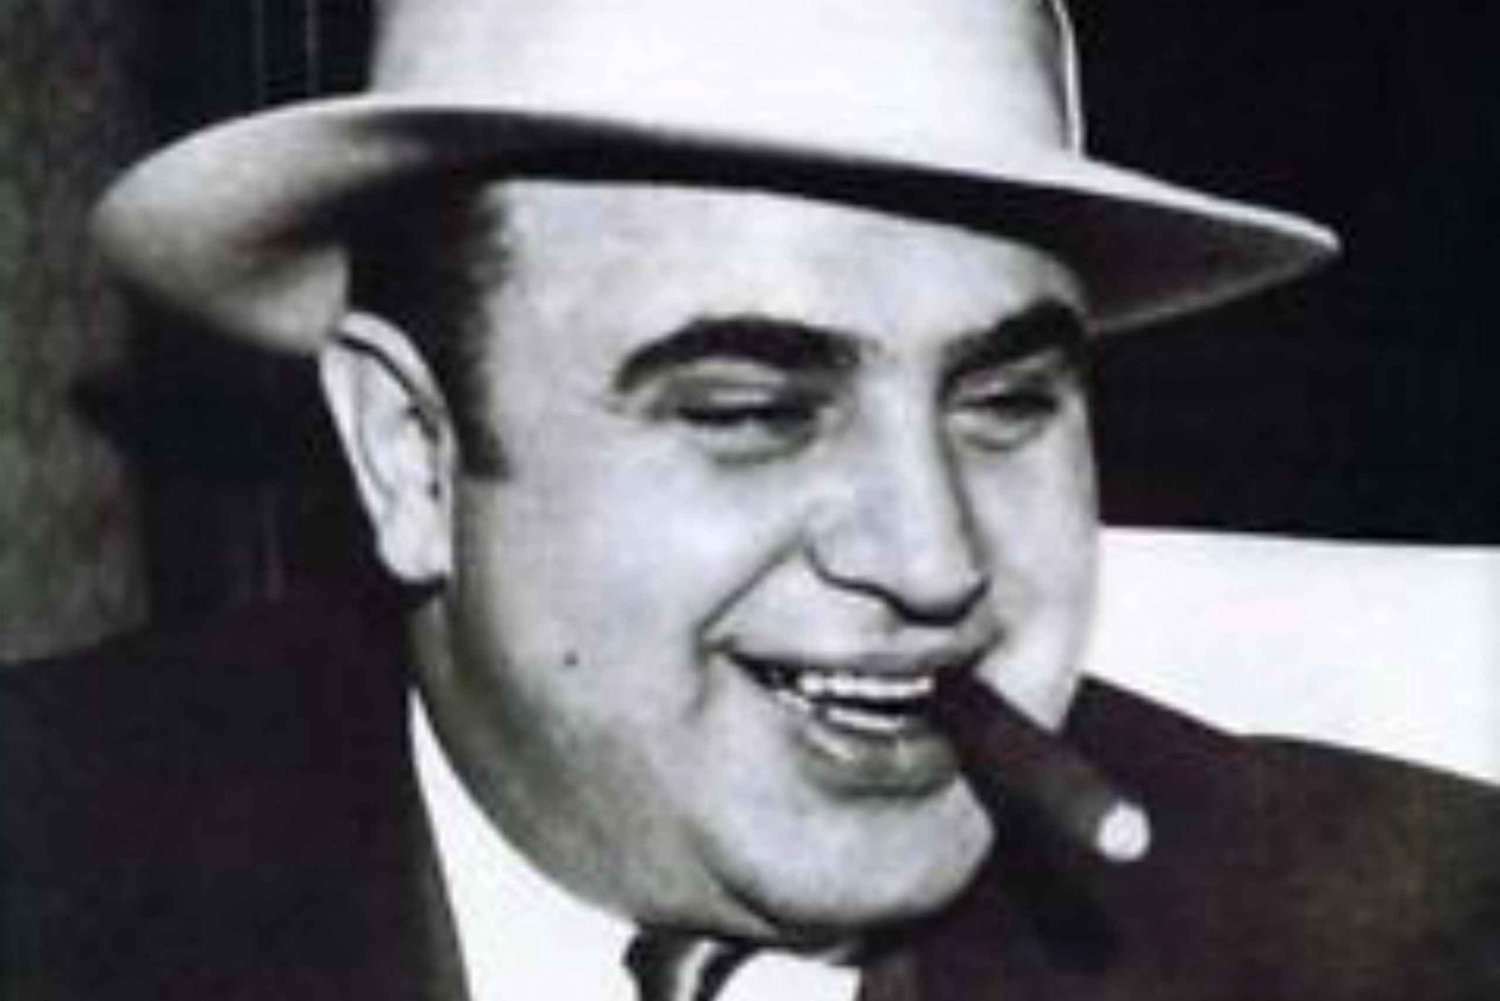 Chicago : Visite privée de 3 heures sur le gangster Al Capone